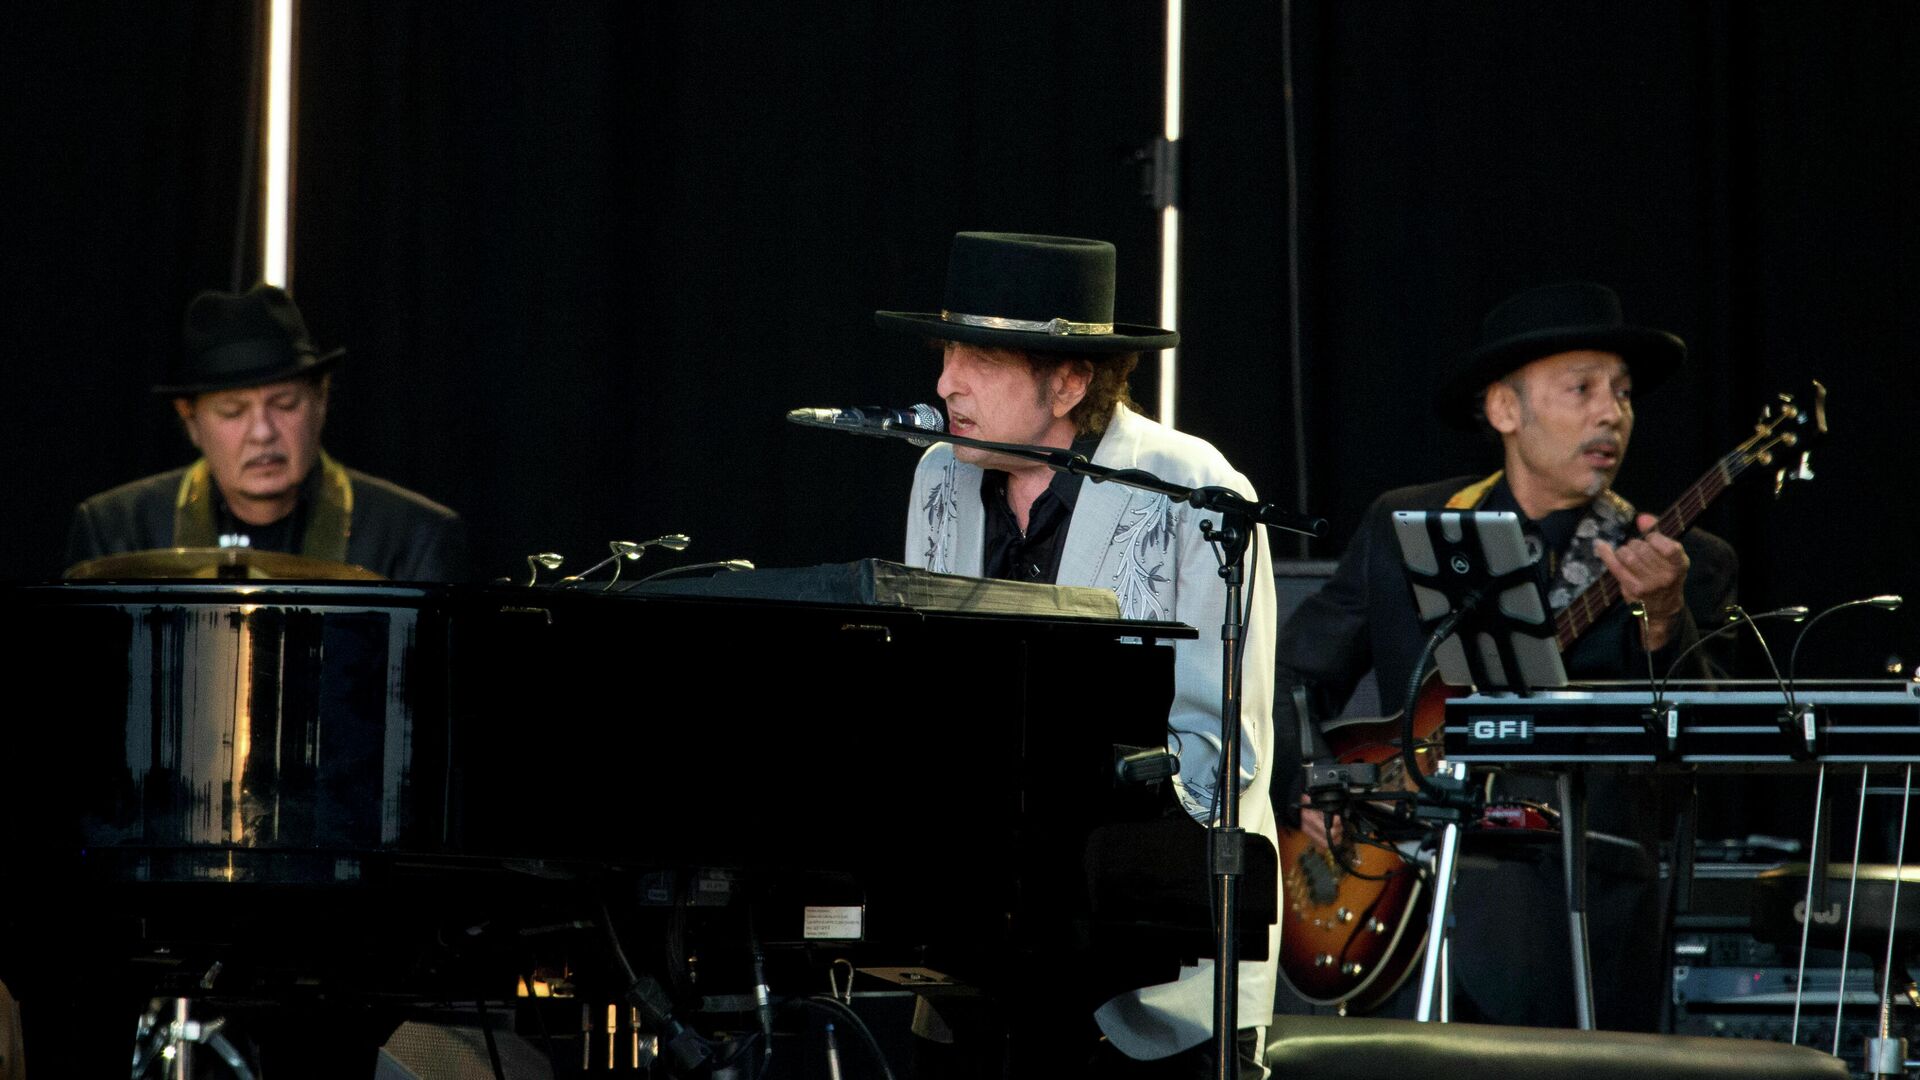 Американский певец Боб Дилан во время выступления на фестивале British Summer Time festival в Лондоне - РИА Новости, 1920, 23.11.2020